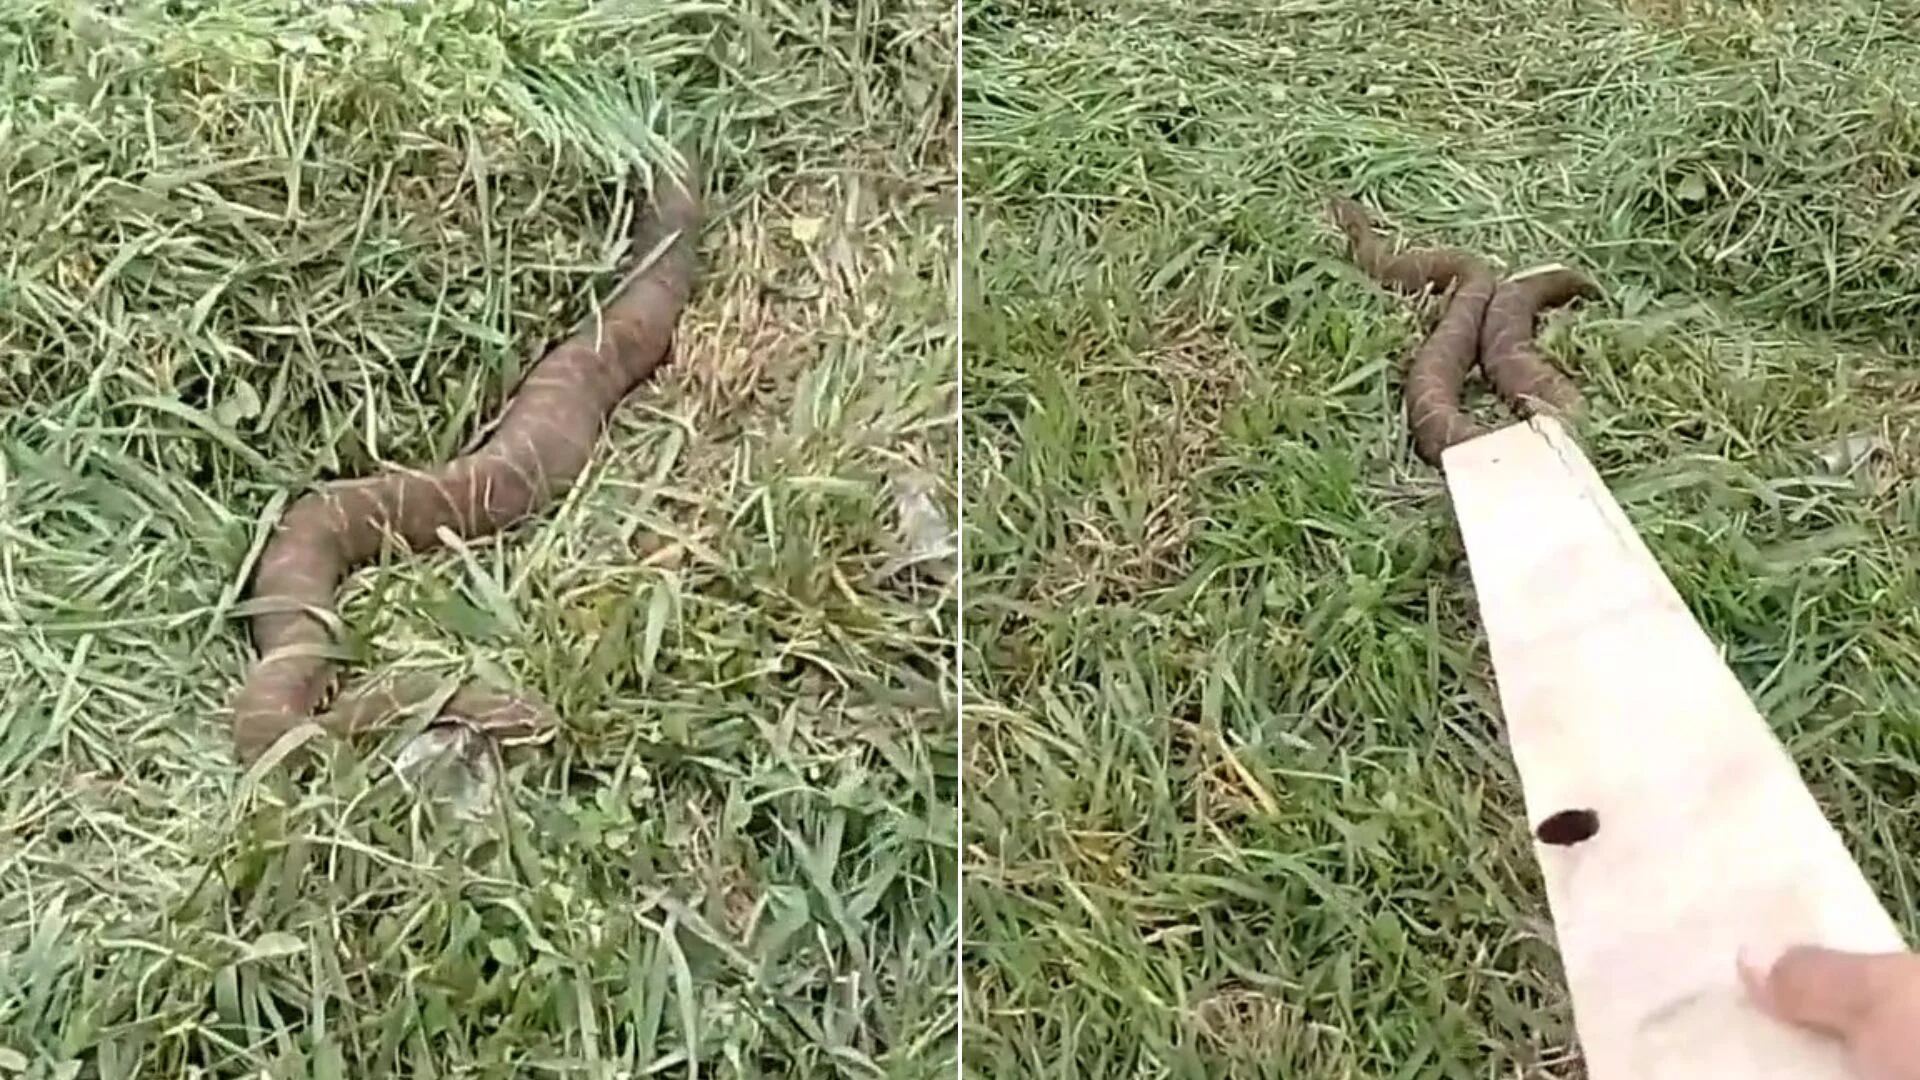 Encuentro sorprendente en la Ruta 14: un camionero se topó con una serpiente de casi dos metros. (TikTok)